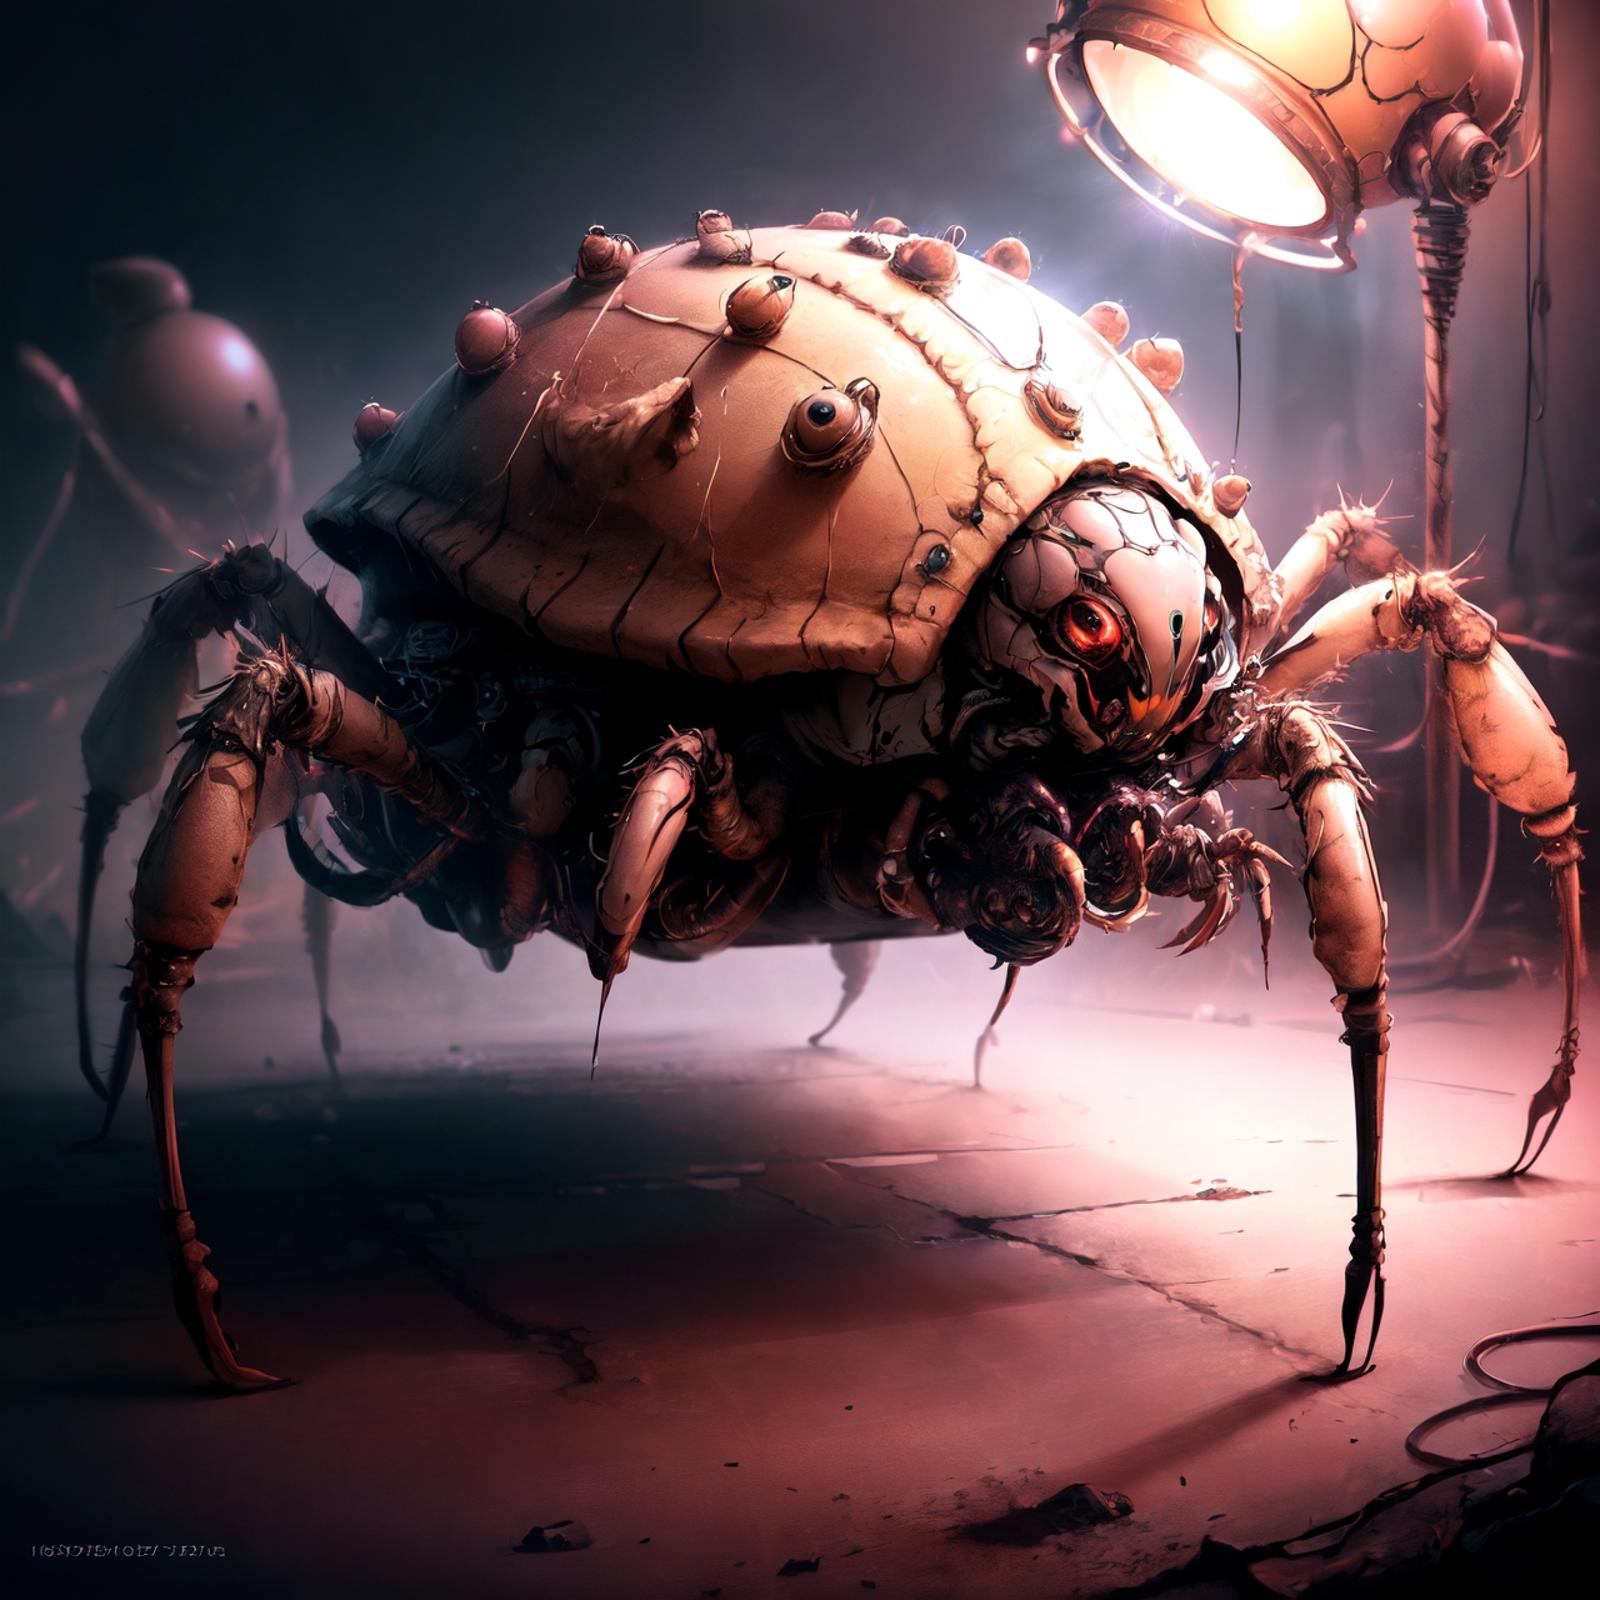 ArachnoPhobiaAI - konyconi image by Cwieku